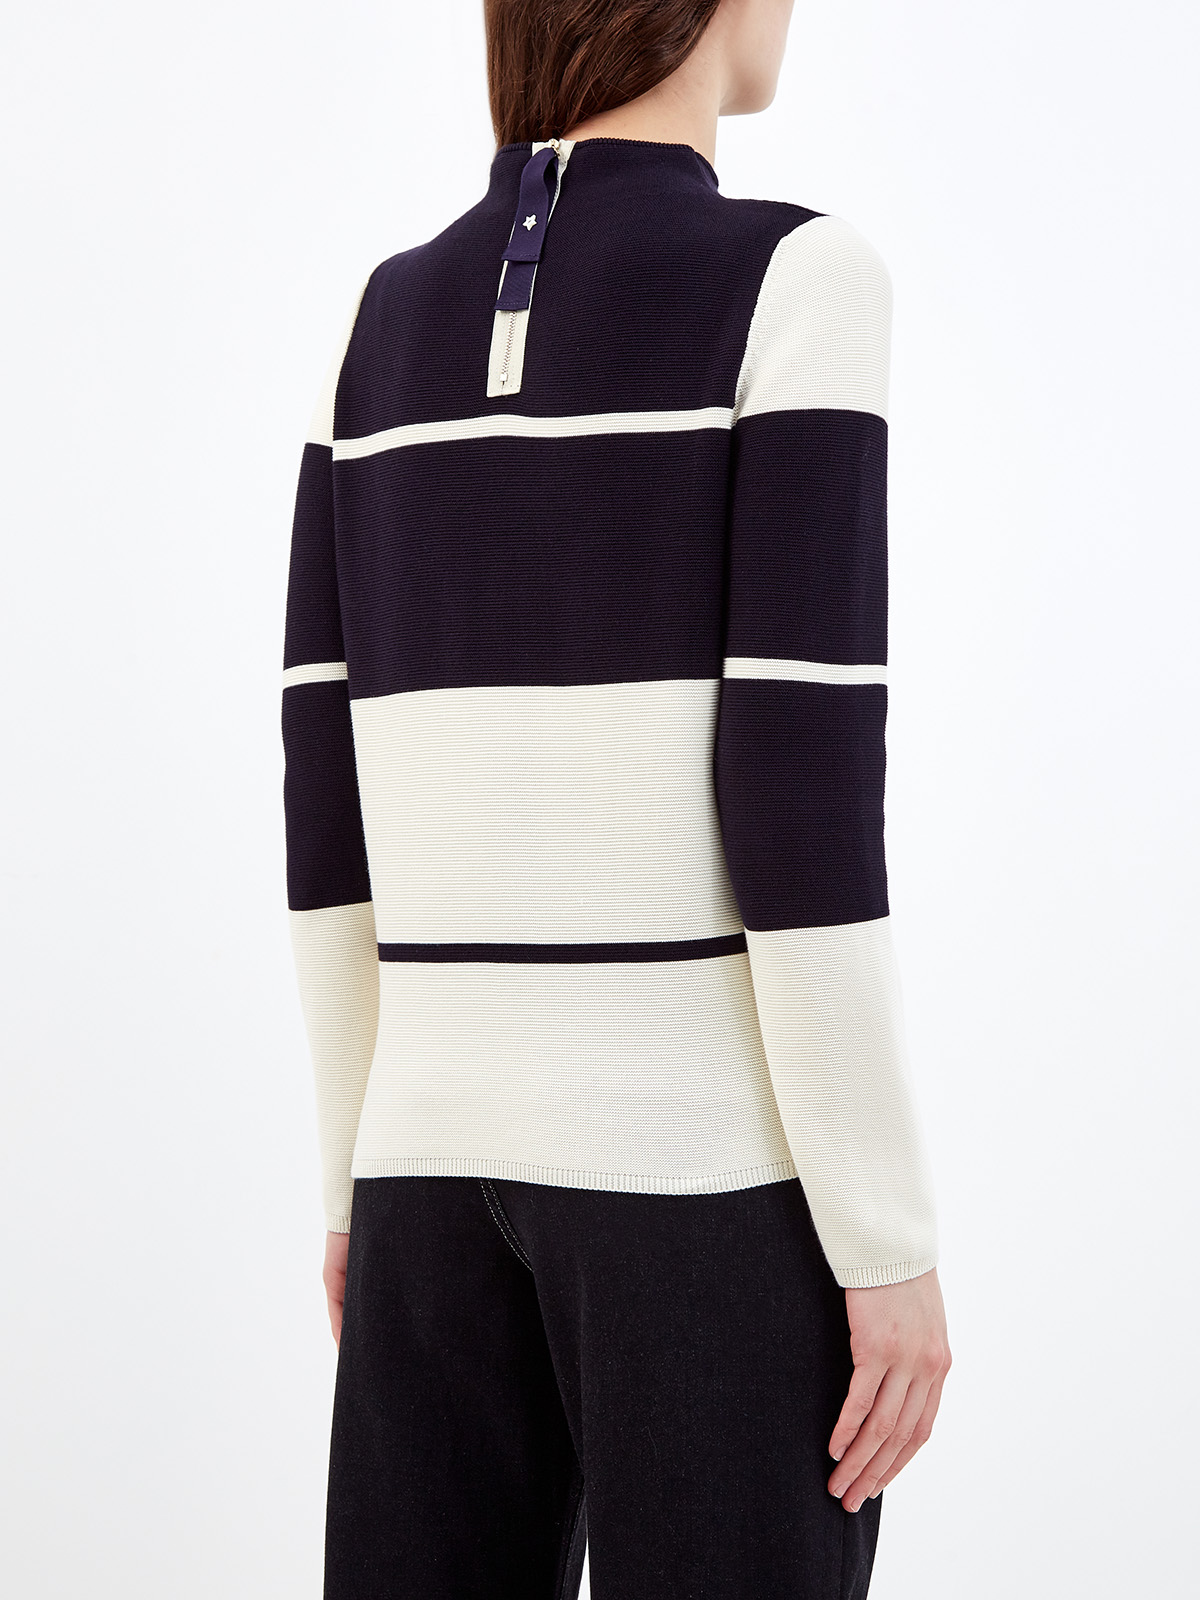 Пуловер из хлопковой пряжи в стиле colorblock LORENA ANTONIAZZI, цвет черно-белый, размер 40 - фото 4